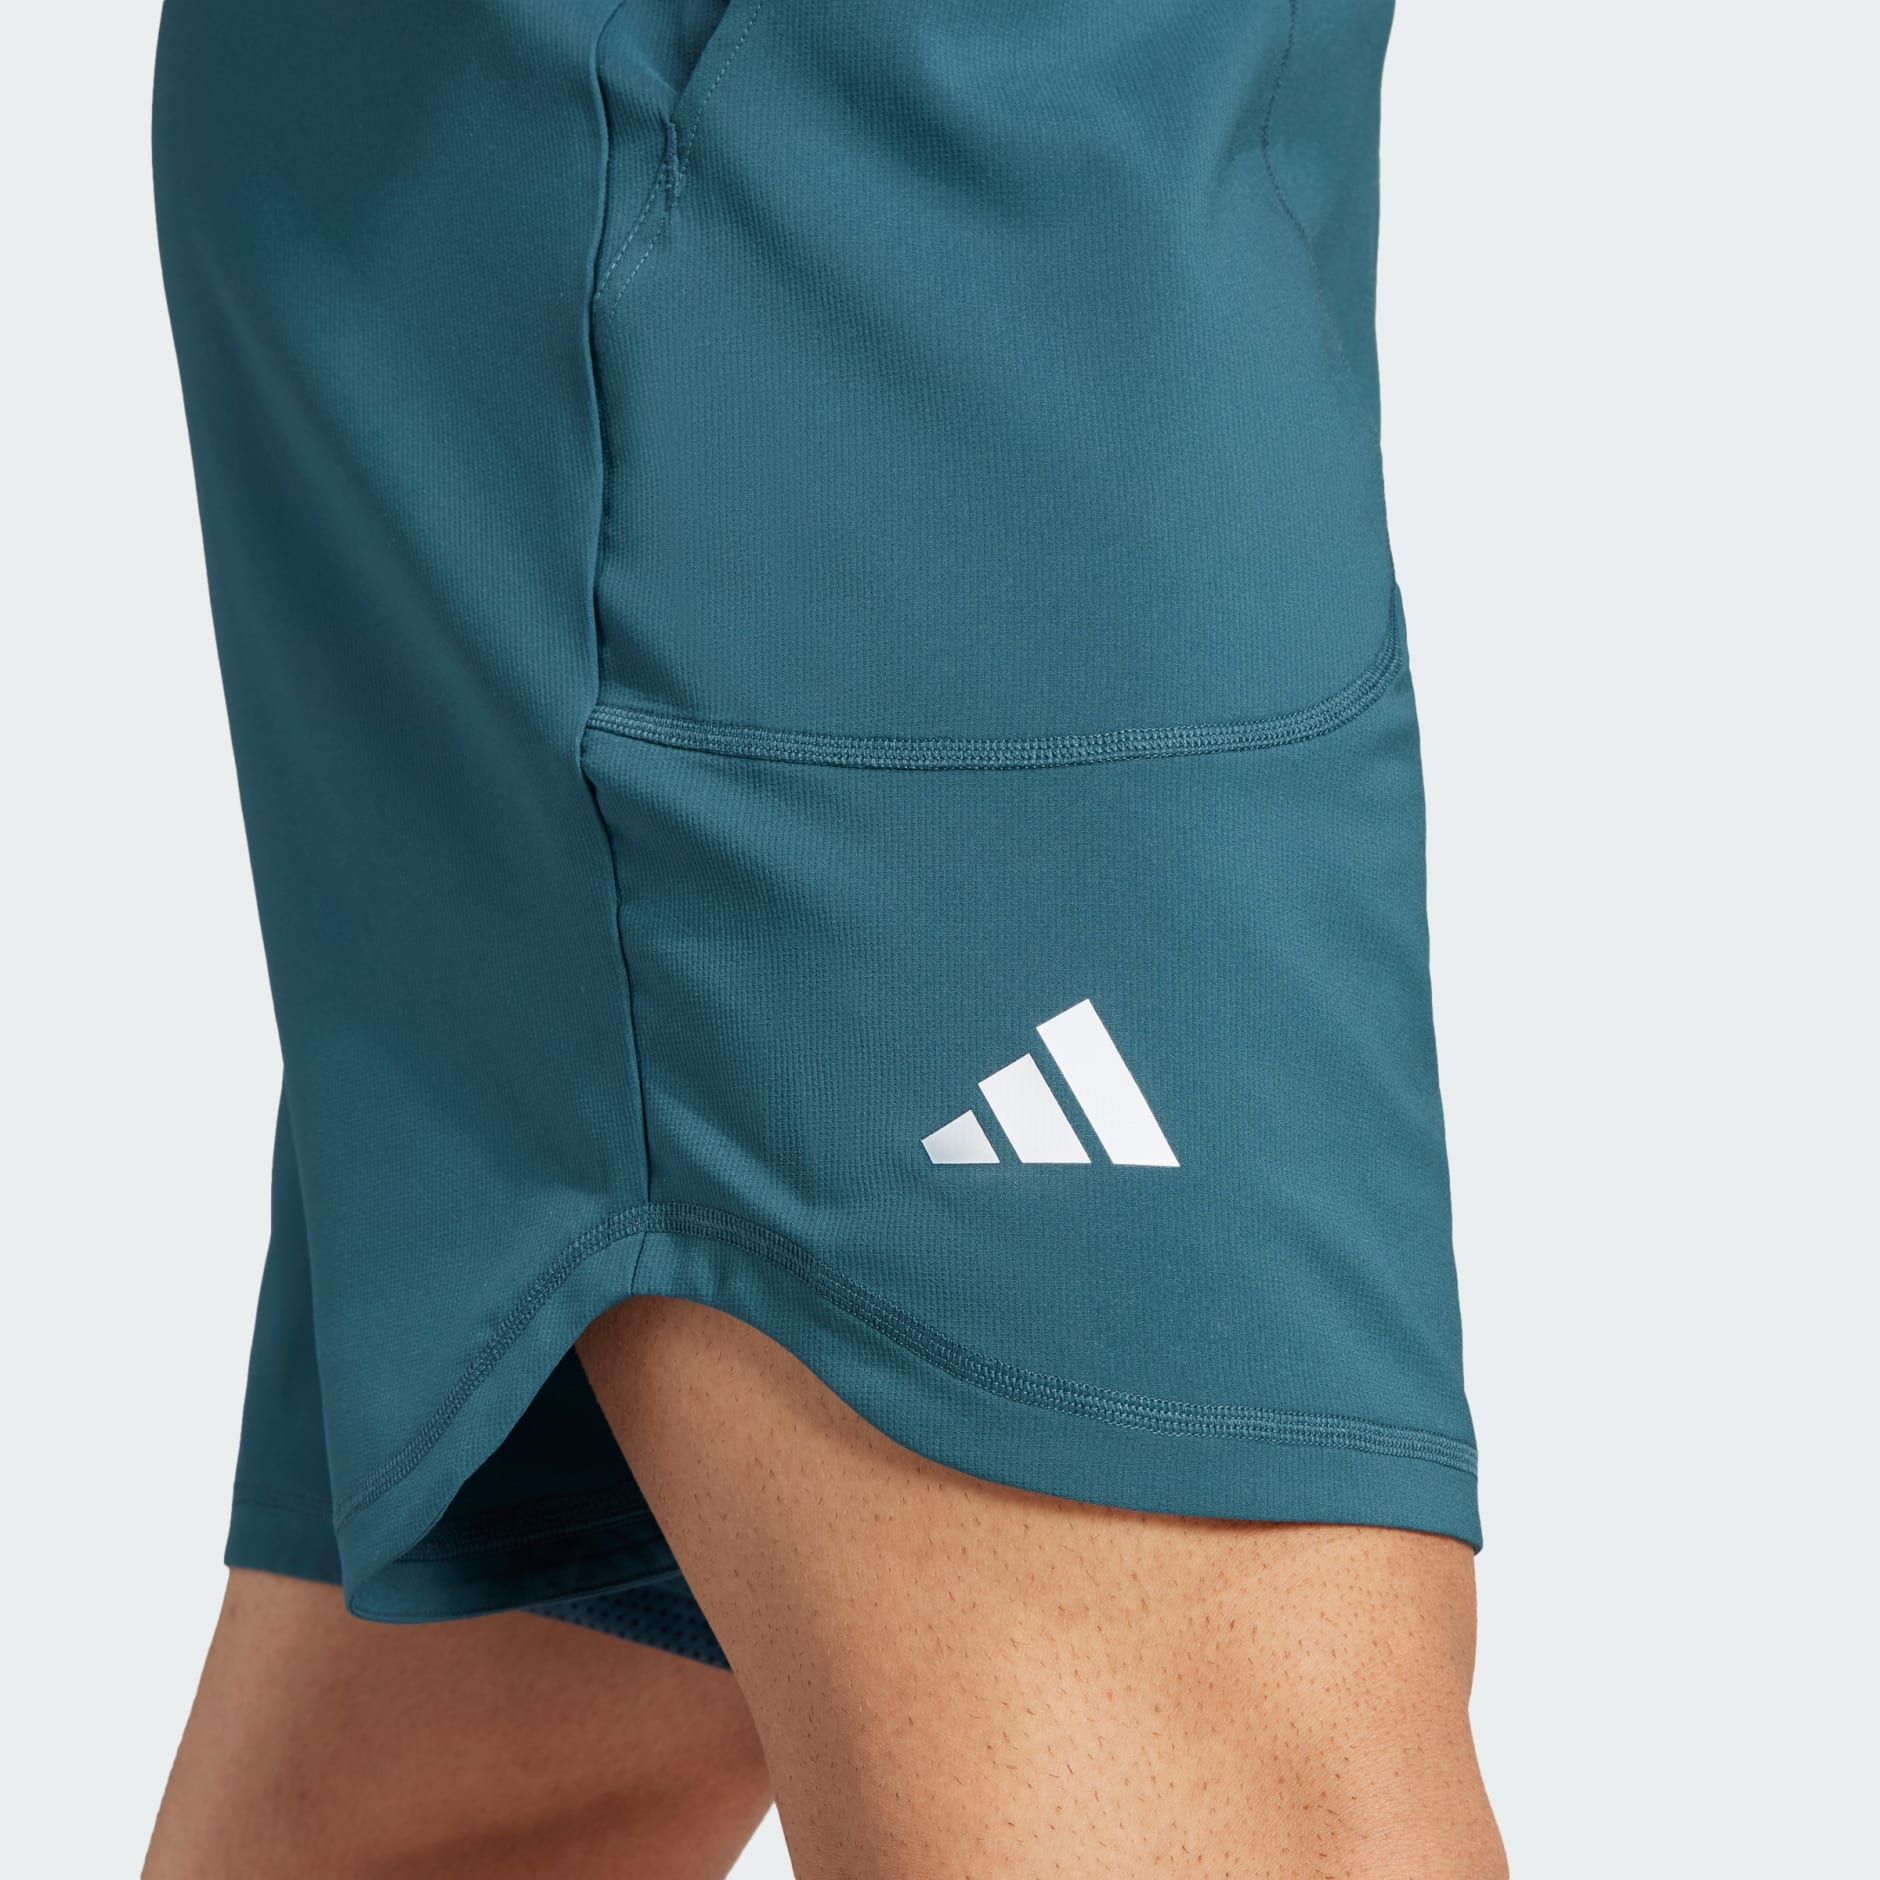 Clothing - Tennis AEROREADY 9-Inch Pro Shorts - Turquoise | adidas ...